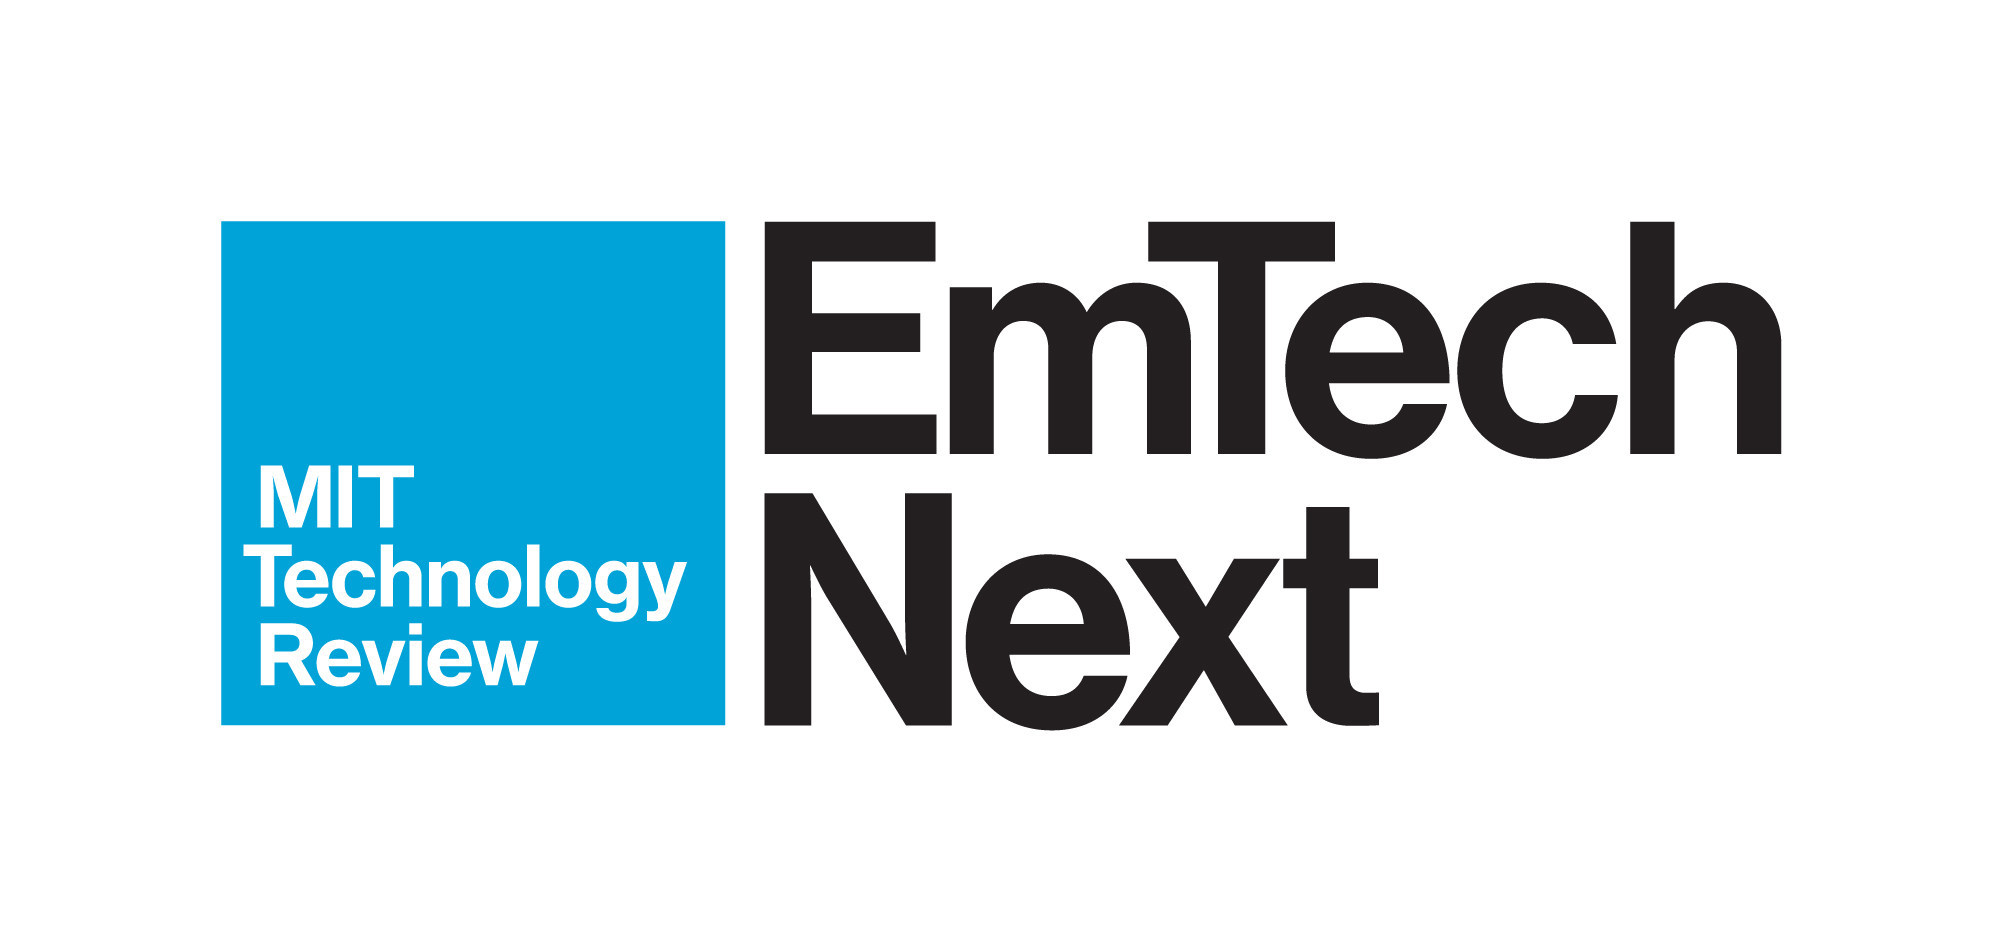 MIT Technology Review Announces 2020 EmTech Next Virtual Conference